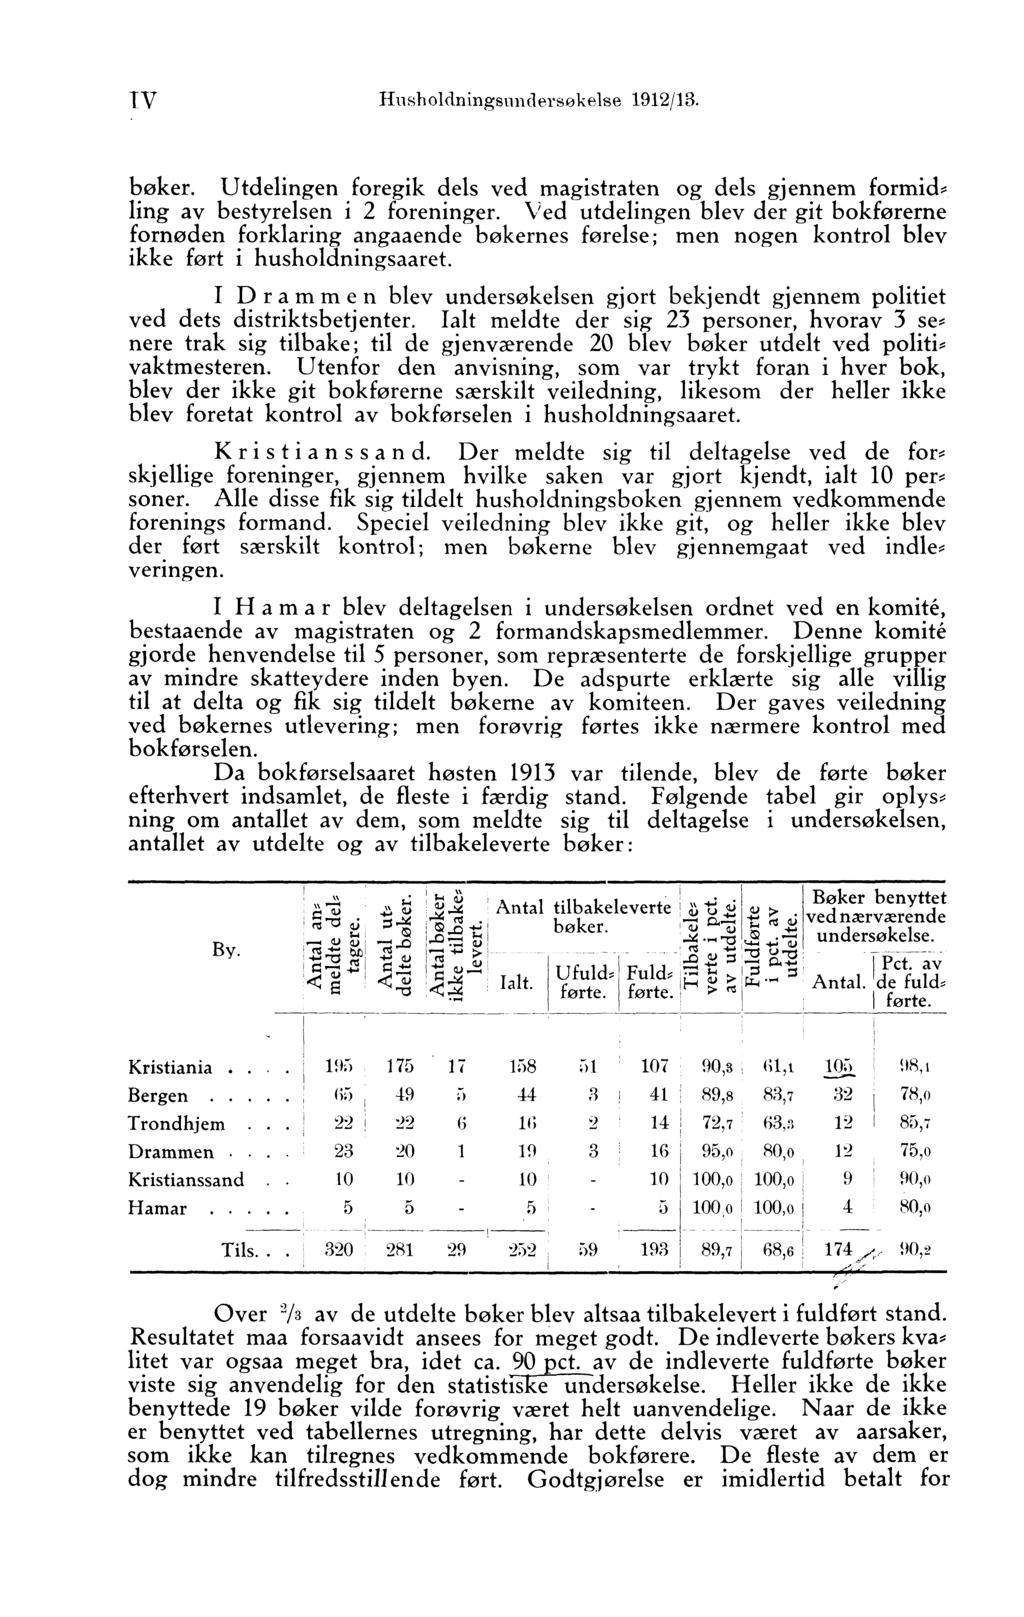 TV Husholdningsundersokelse 1912/13. bøker. Utdelingen foregik dels ved magistraten og dels gjennem formid, ling av bestyrelsen i 2 foreninger.